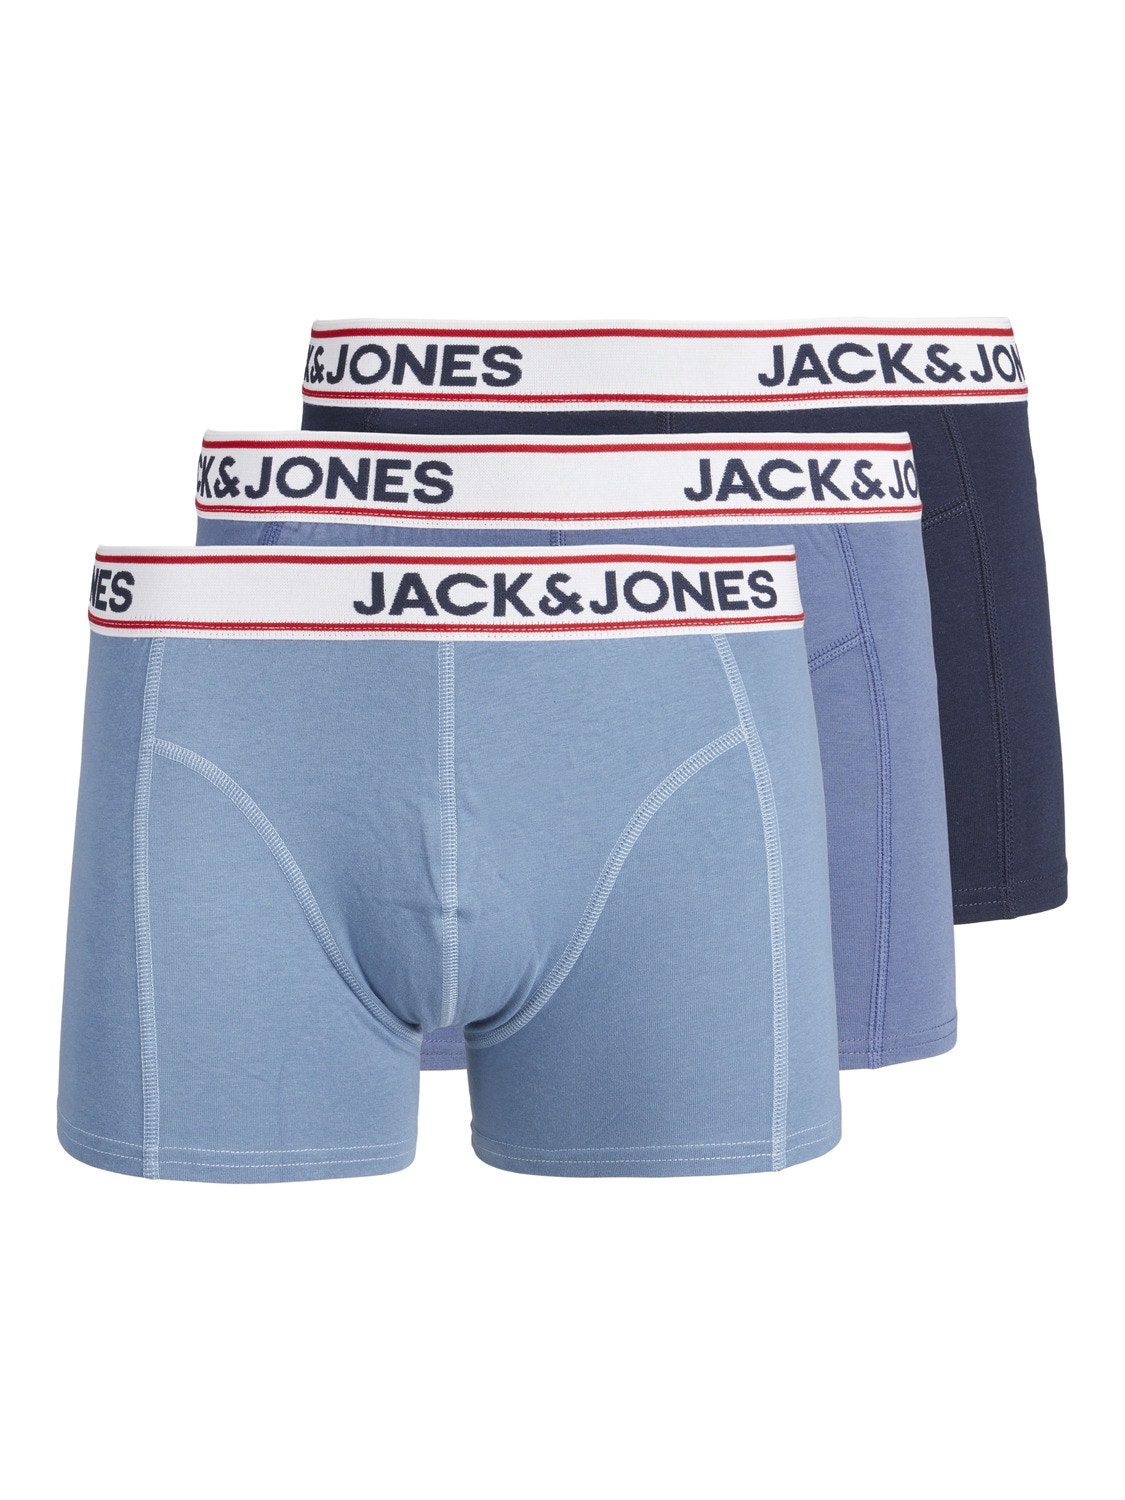 Jack & Jones 3-pack Boxers -Navy Blazer - 12236291